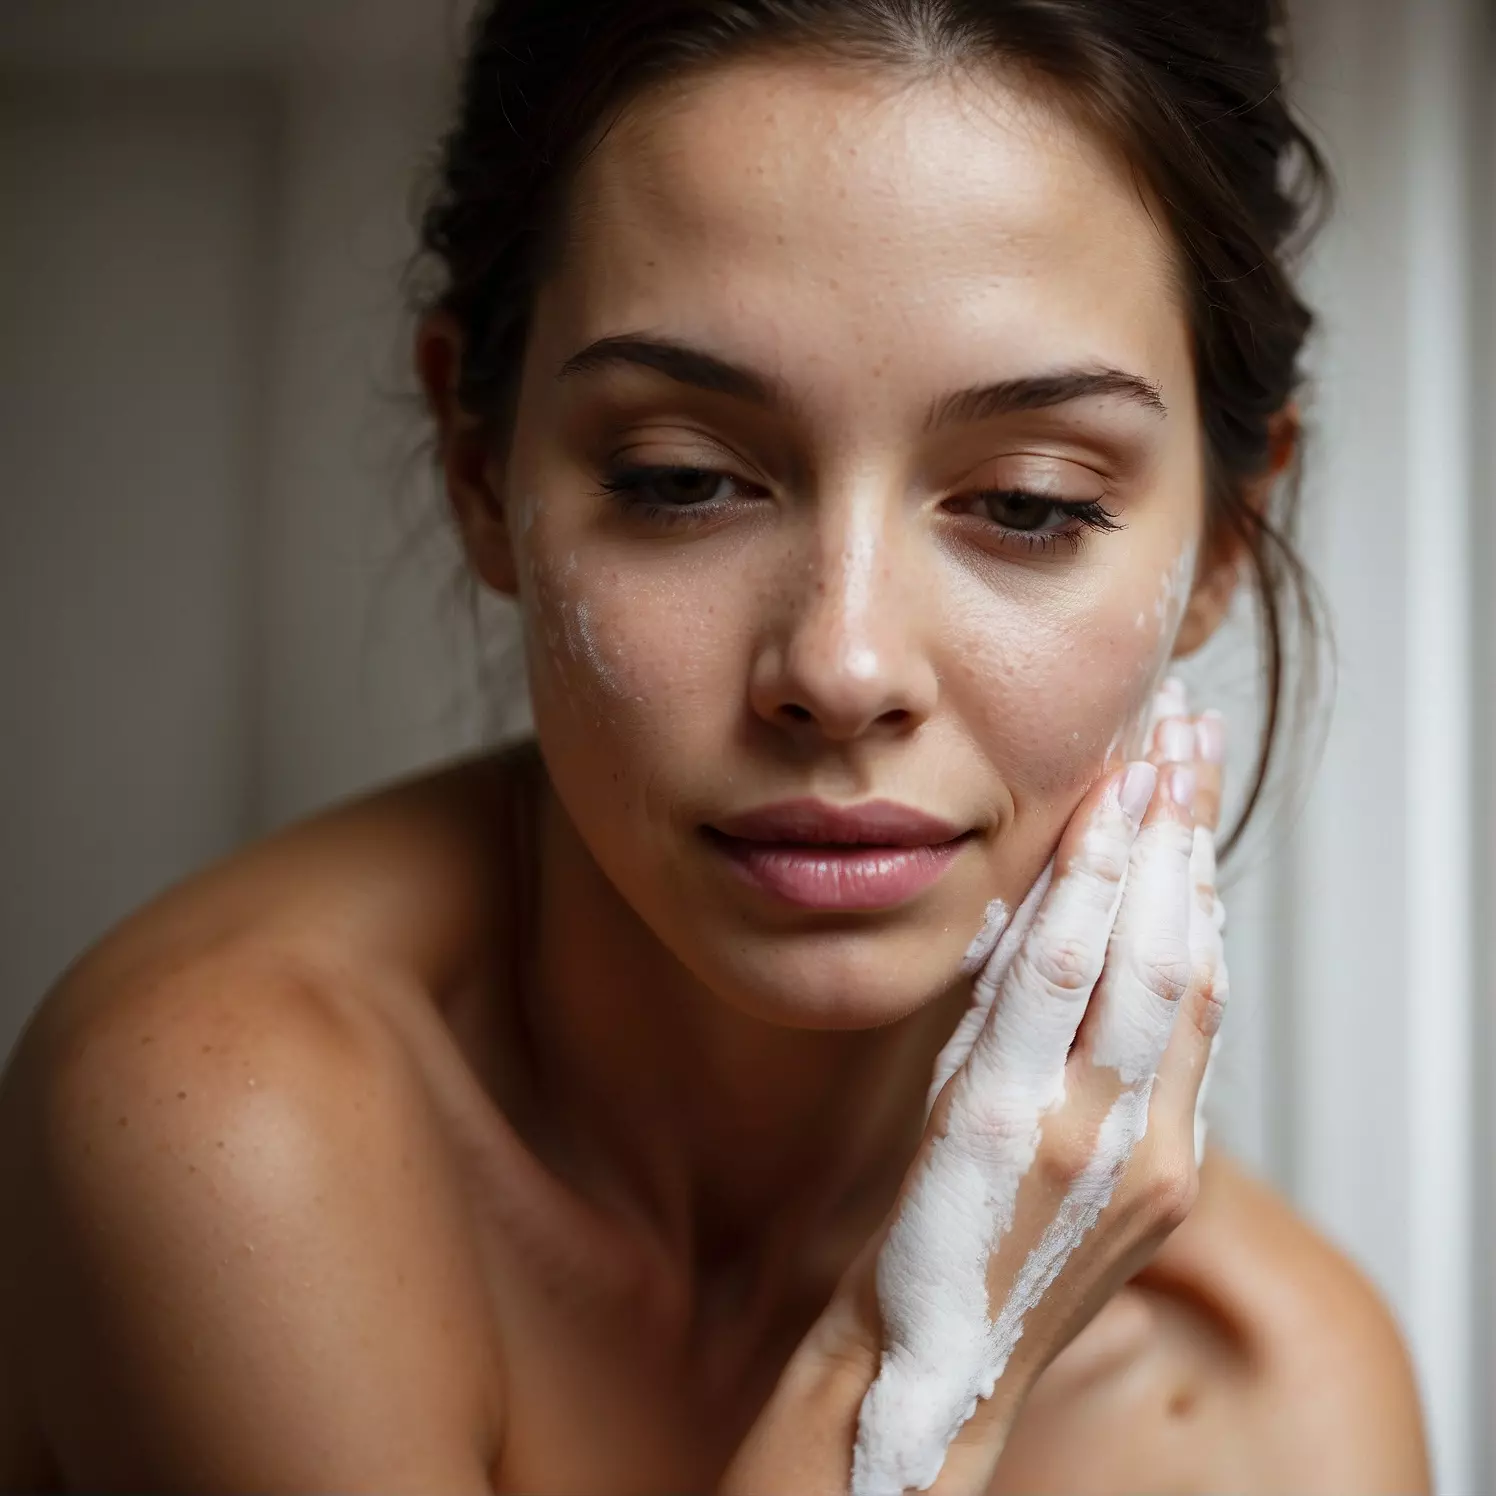 Mujer limpiando su cara